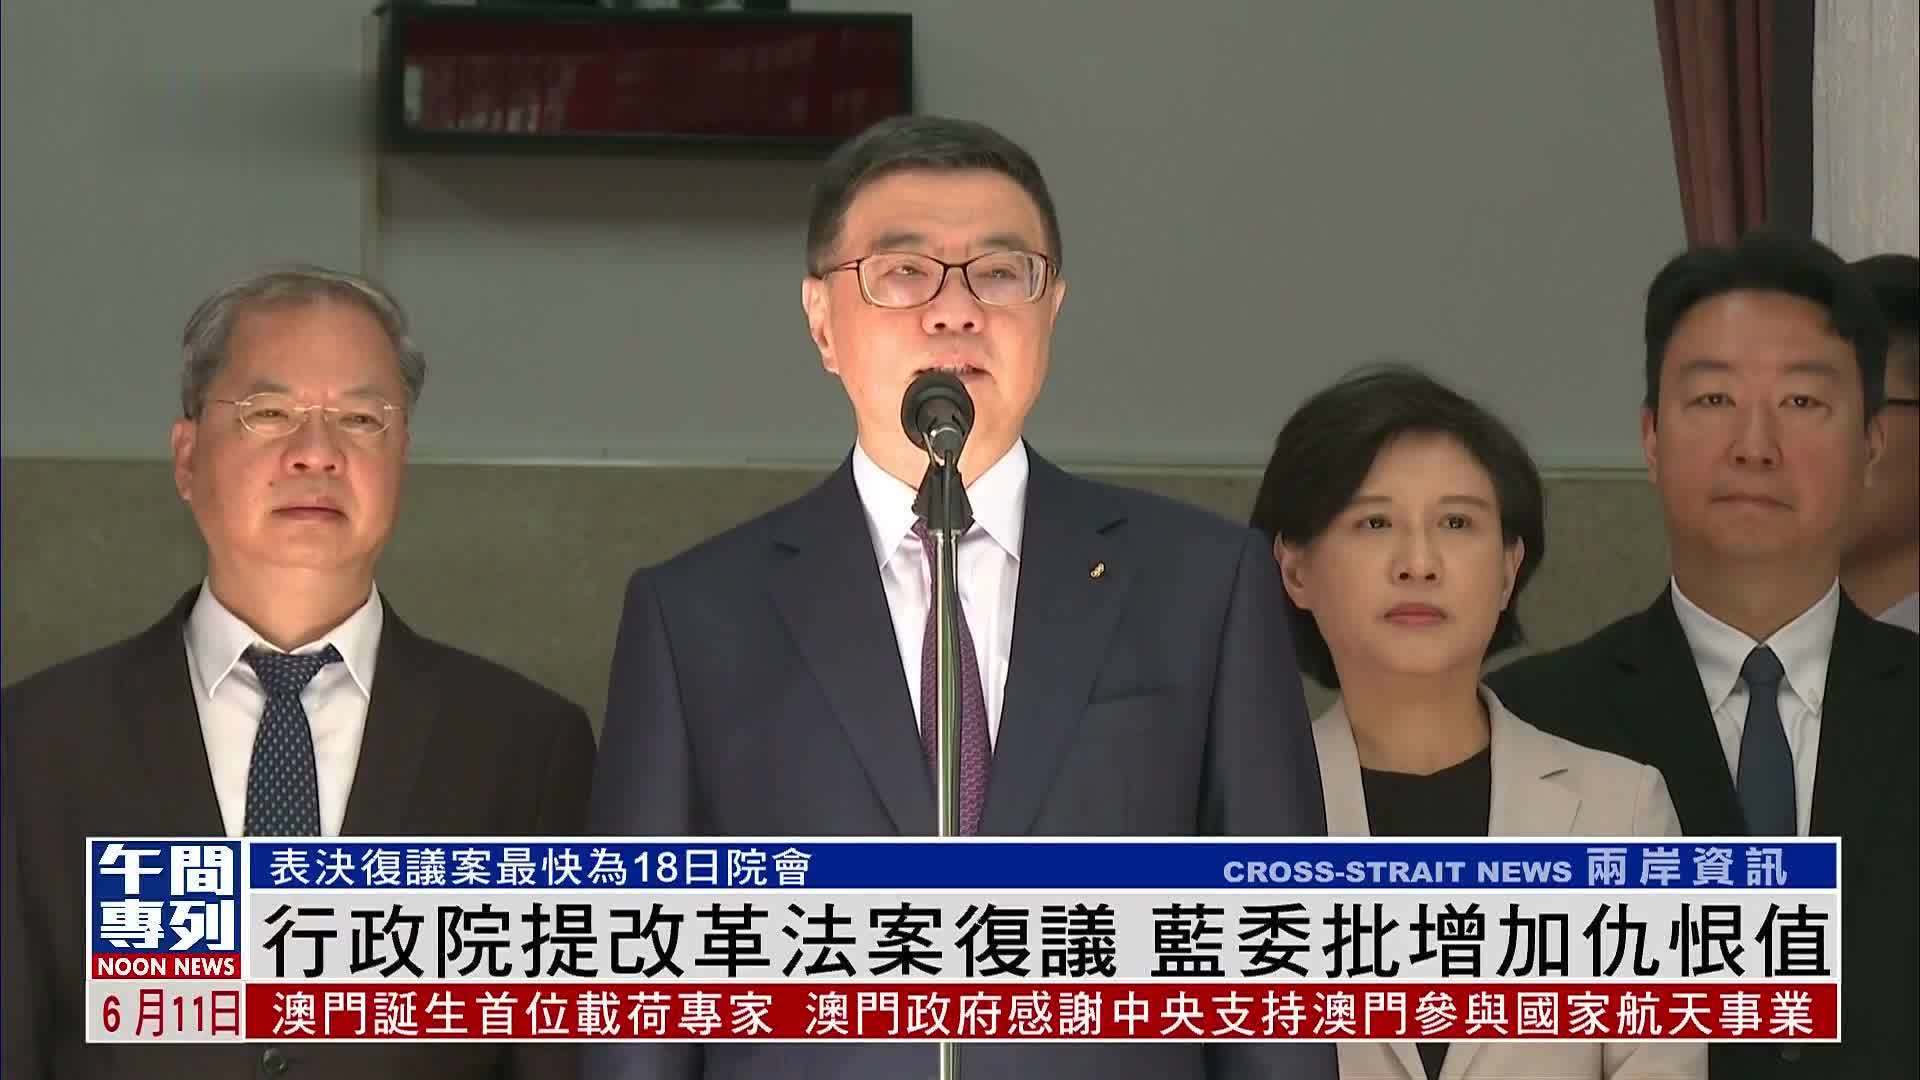 台湾行政院提改革法案复议 蓝委批增加仇恨值